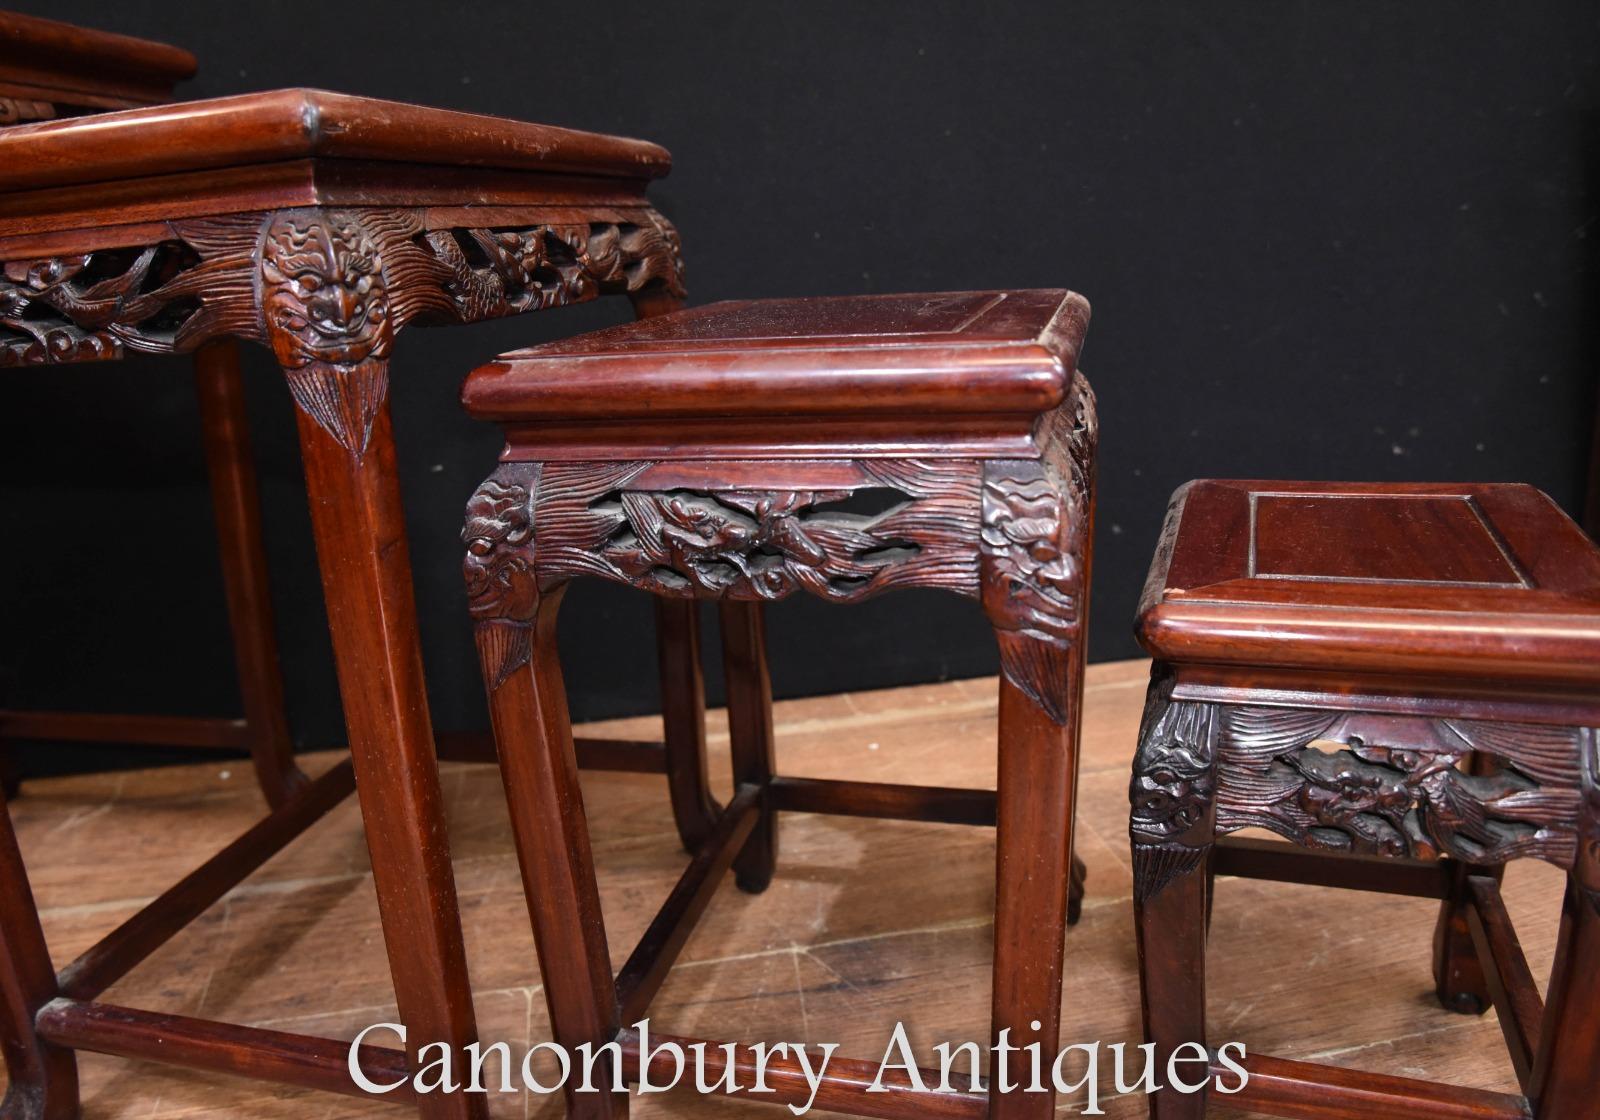 - Magnifique ensemble de quatre tables chinoises anciennes en bois dur
- Visites sur rendez-vous
- Offert en grande forme, prêt à être utilisé immédiatement à la maison
- Nous expédions aux quatre coins de la planète.